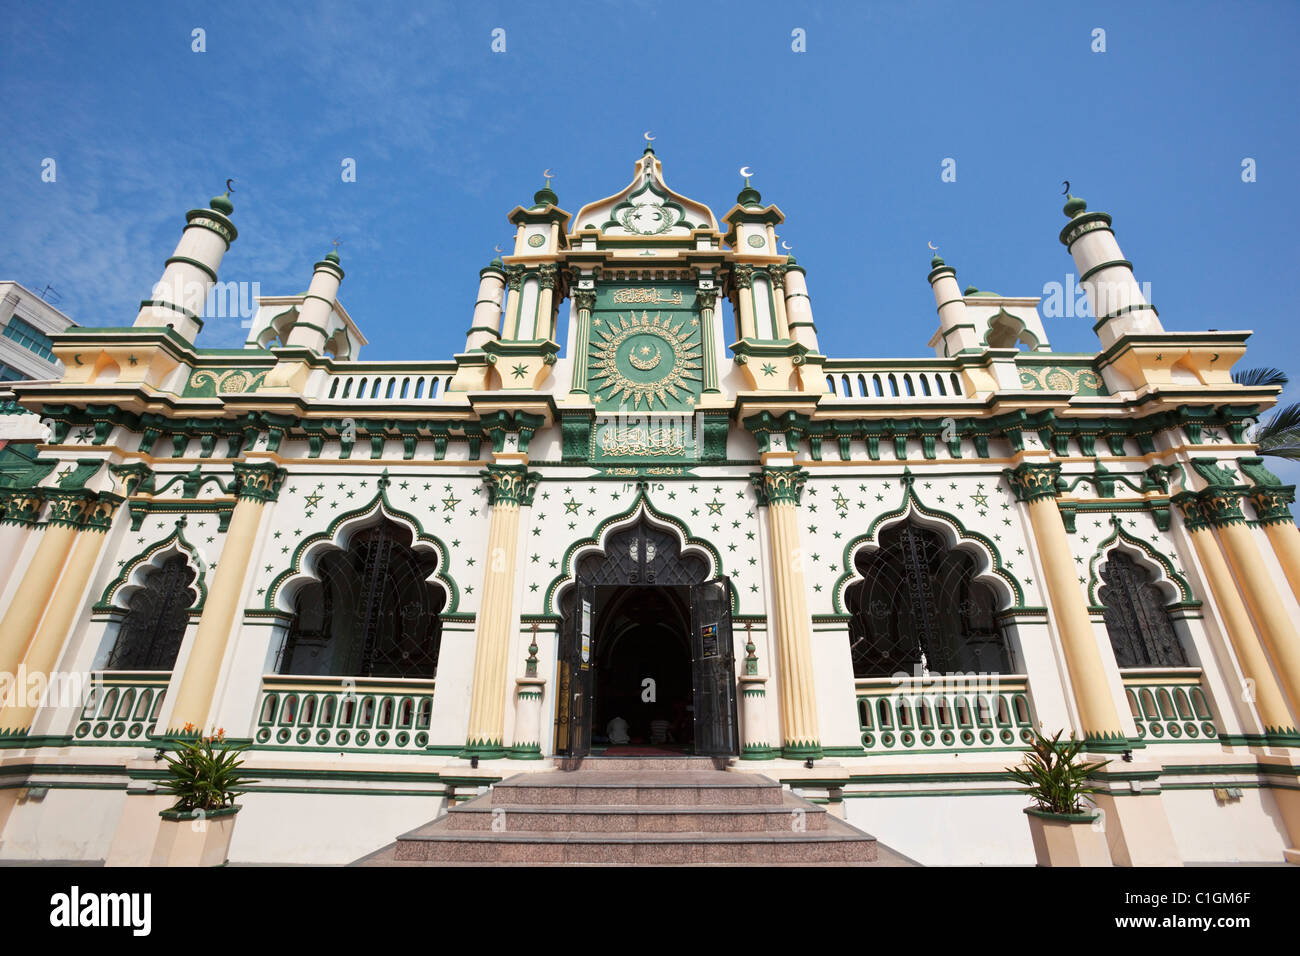 L'architecture islamique de la mosquée Abdul Gaffoor. Little India, Singapour Banque D'Images